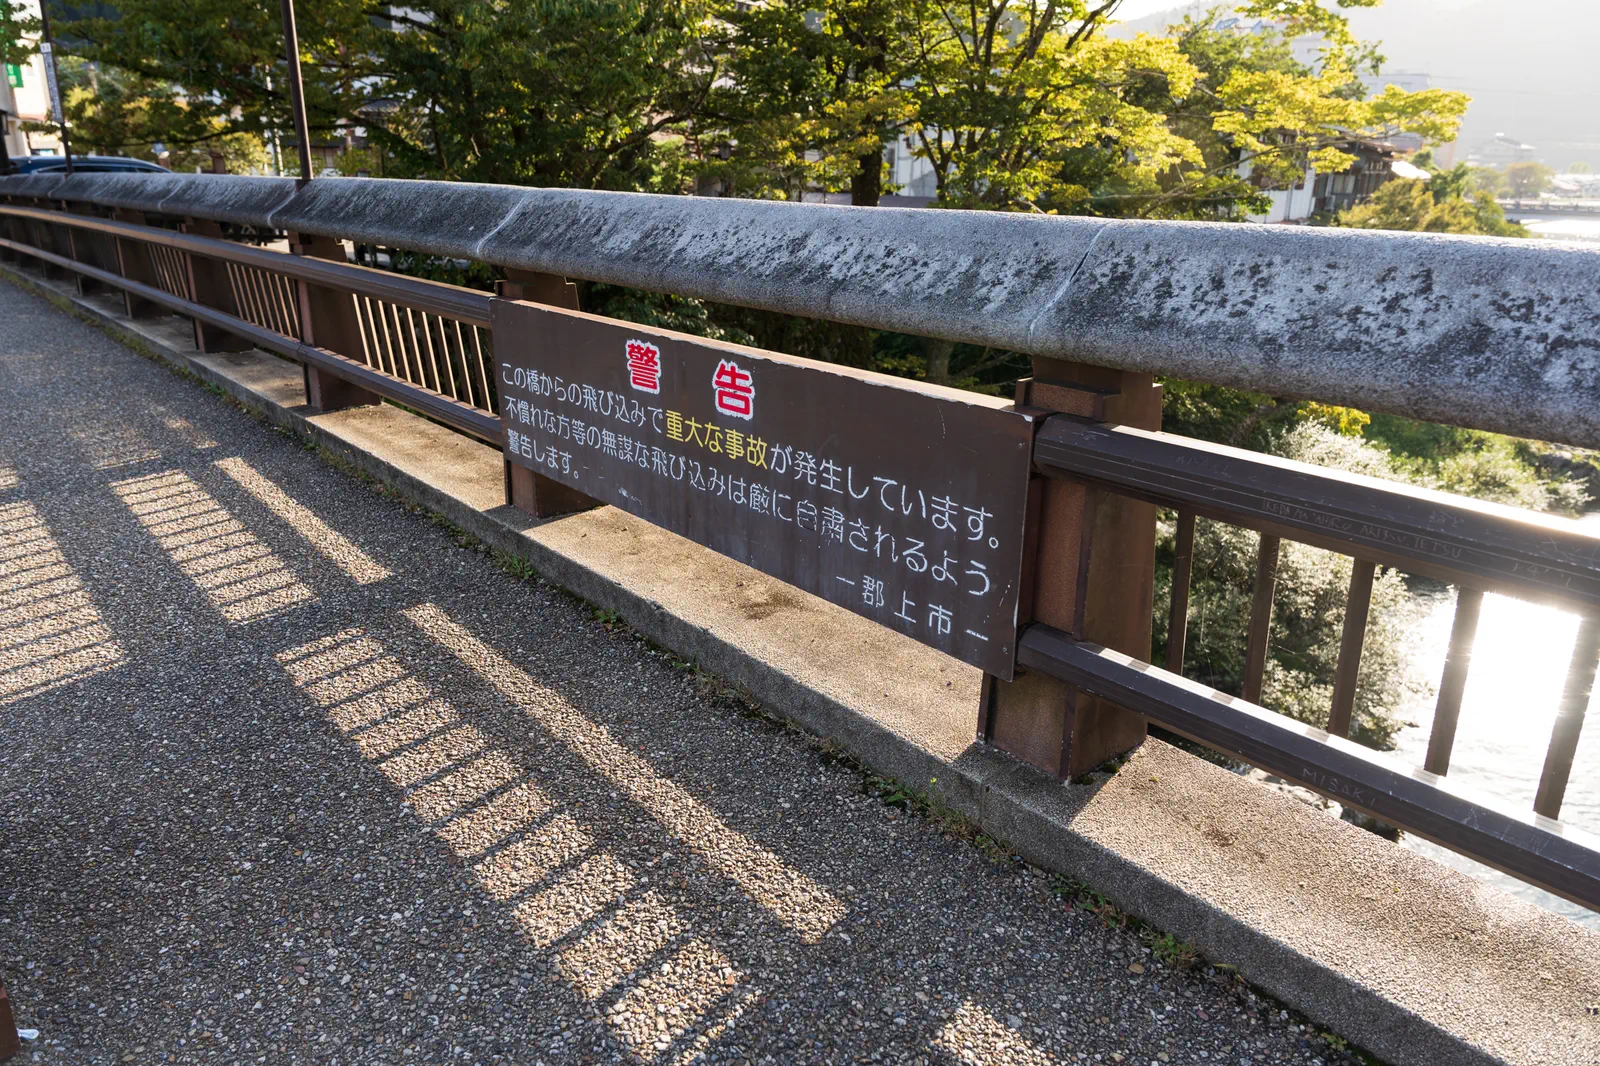 橋の欄干に看板があり、「不慣れな方等の無謀な飛び込みは厳に自粛されるよう警告します」とある